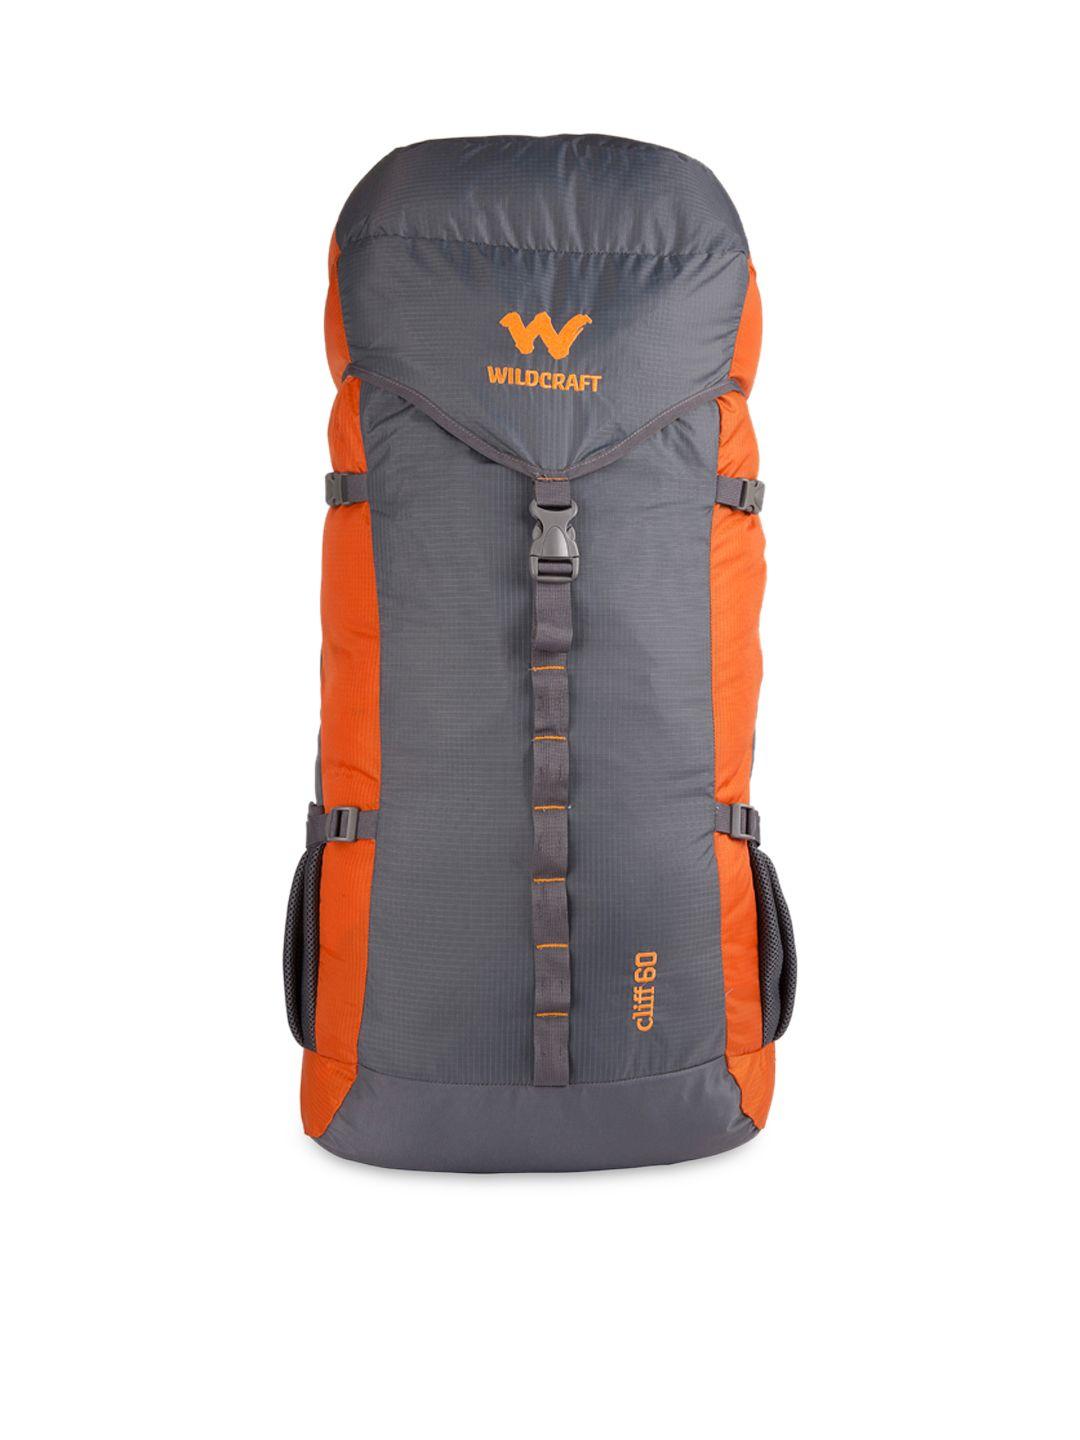 wildcraft unisex grey & orange rucksack